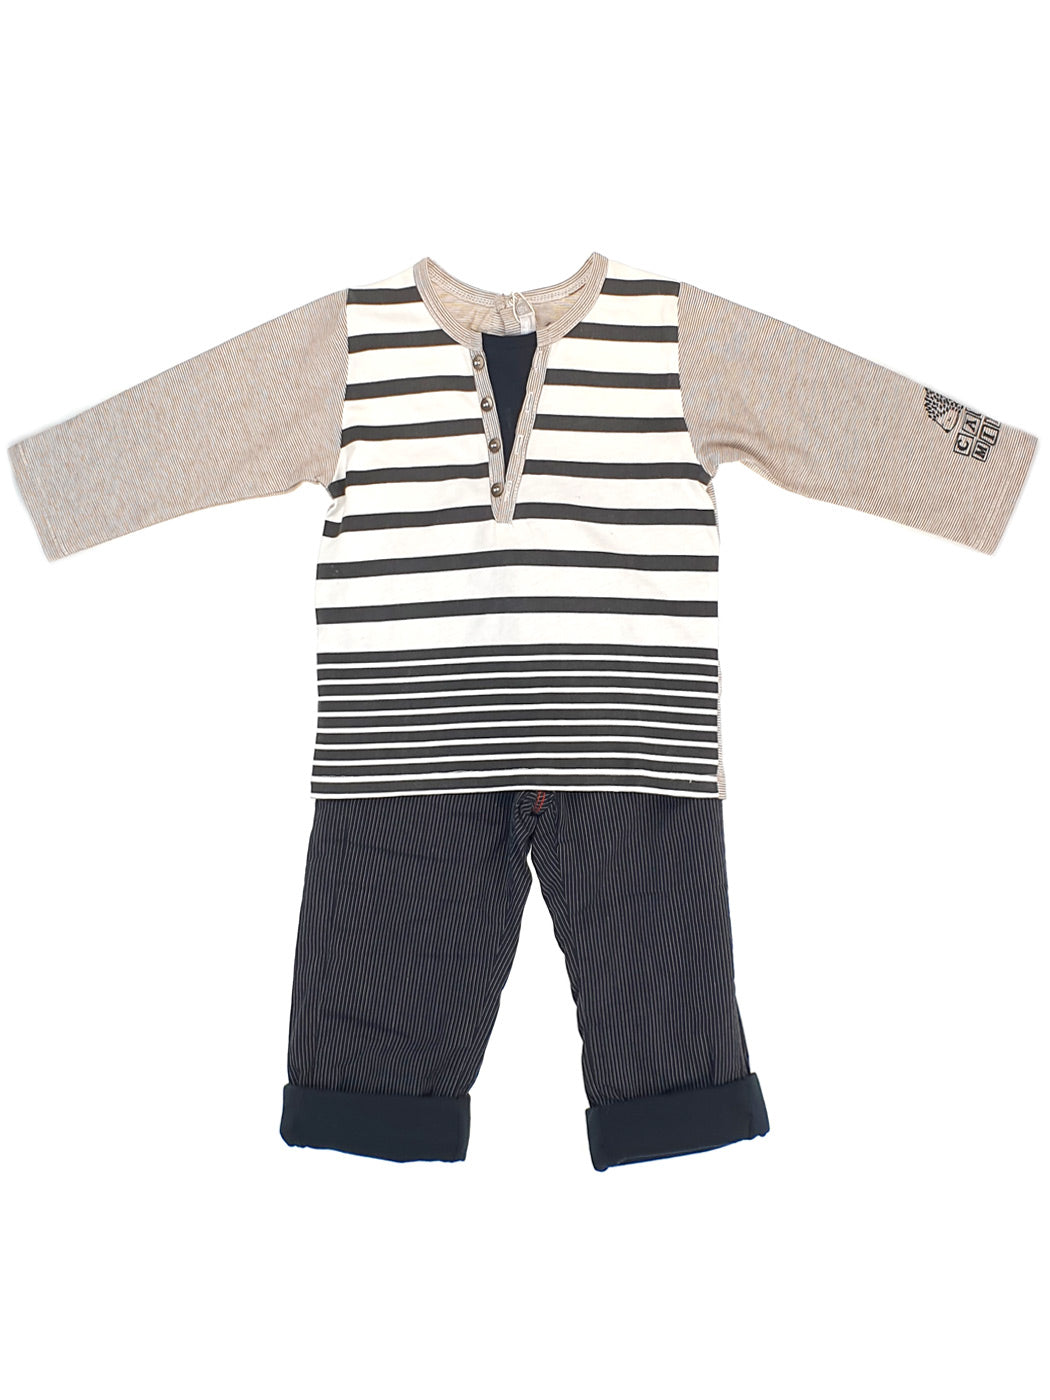 Baby boy's outfit 2pcs-C436111 Beige